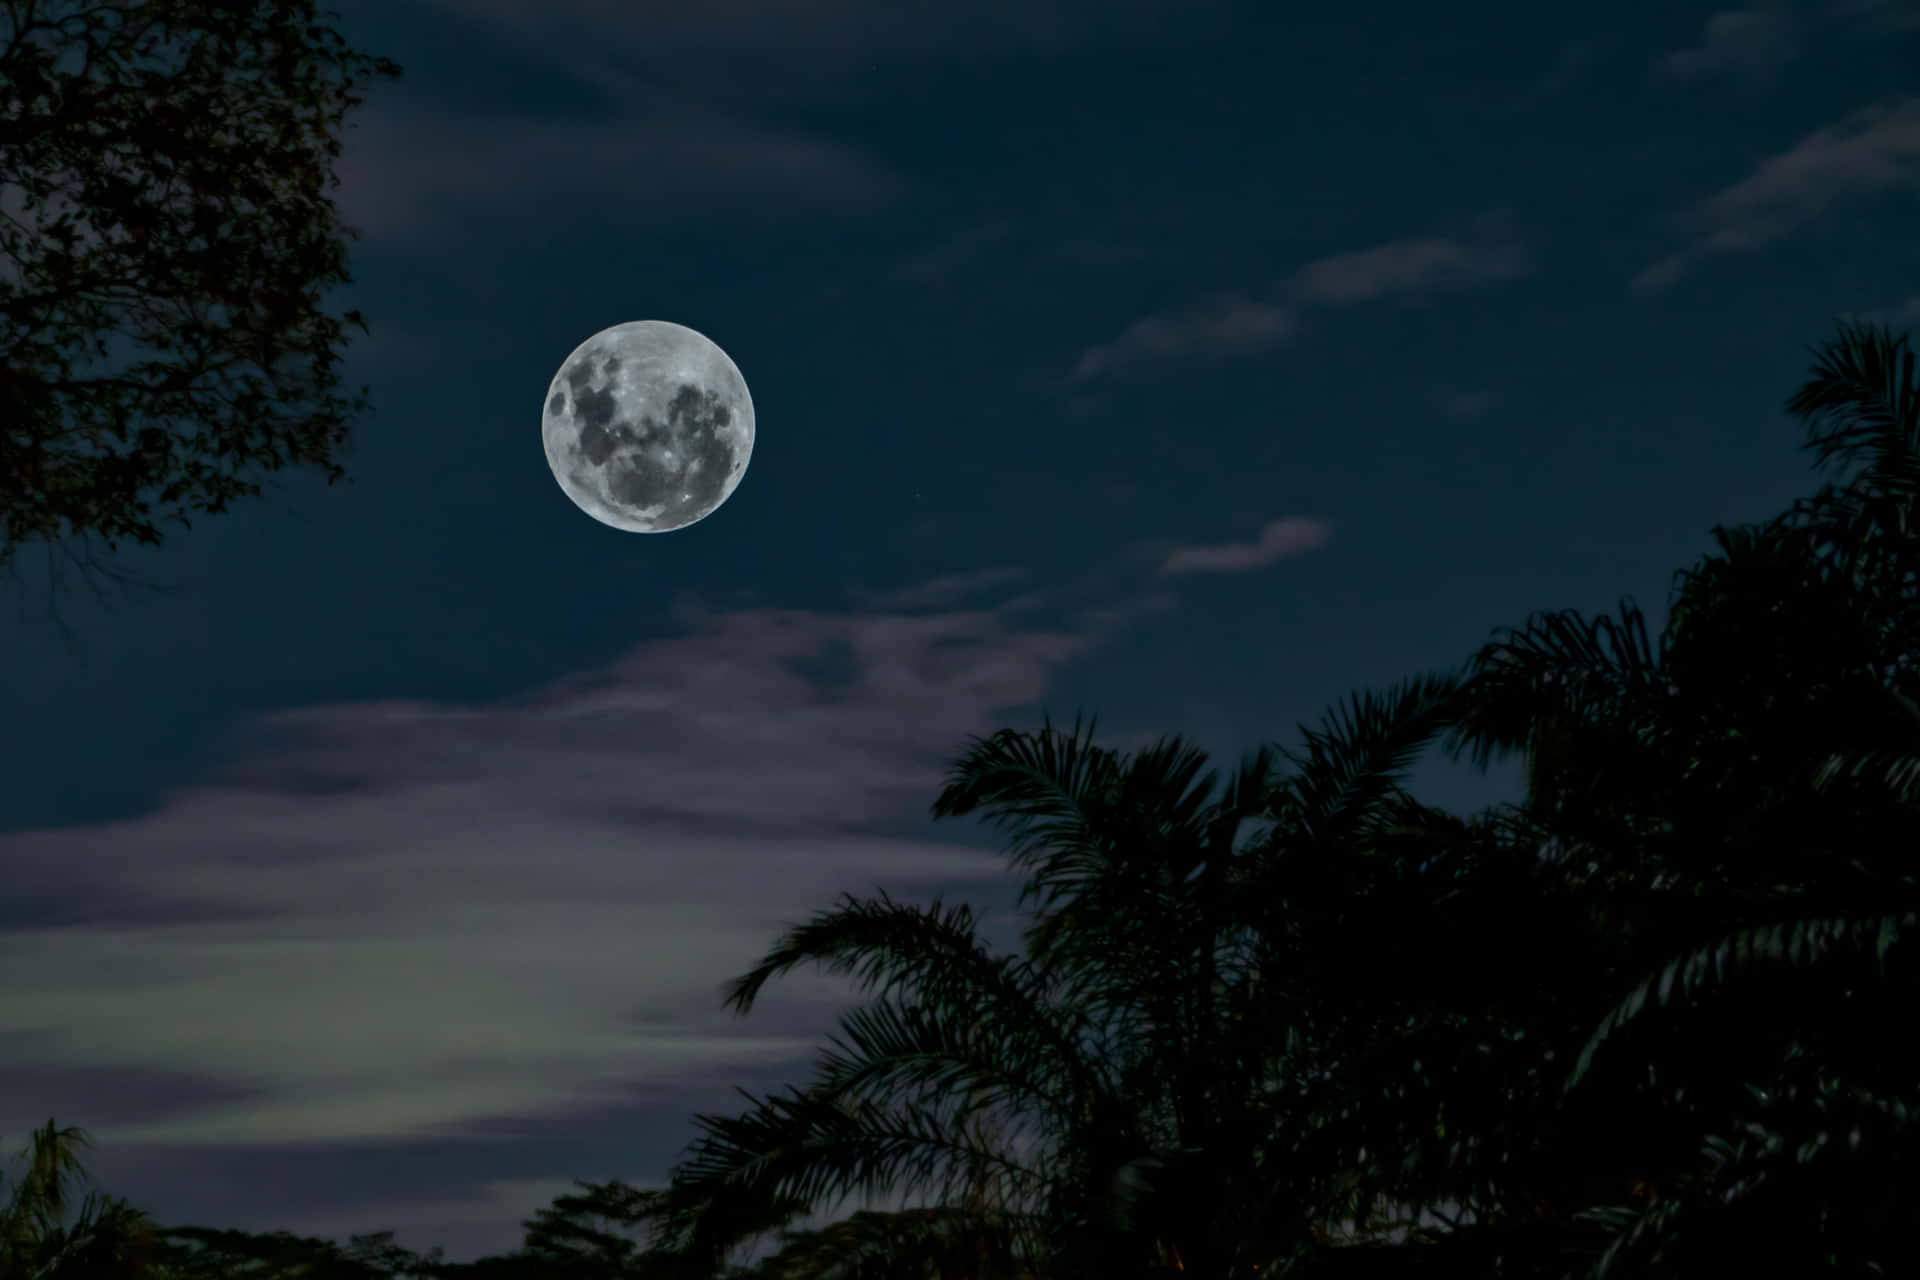 Imagende La Luna Llena Con Manchas Oscuras.